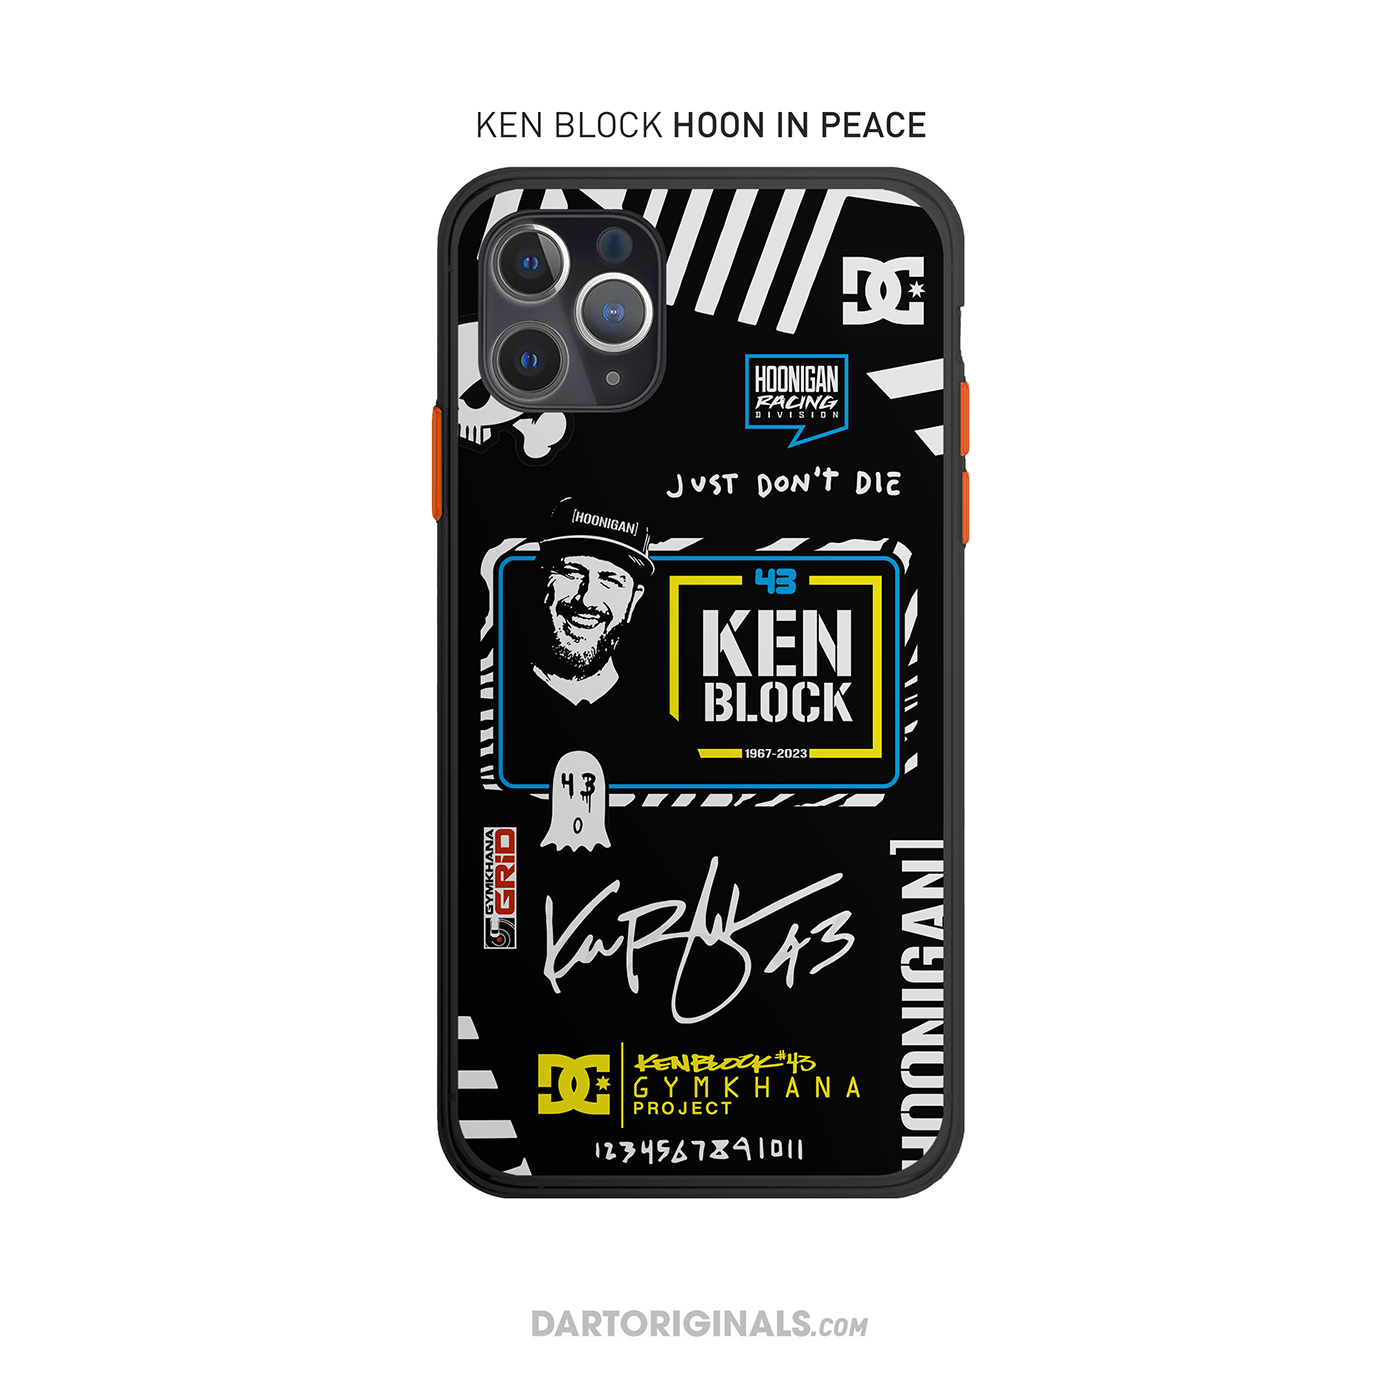 Ken Block: HOON IN PEACE